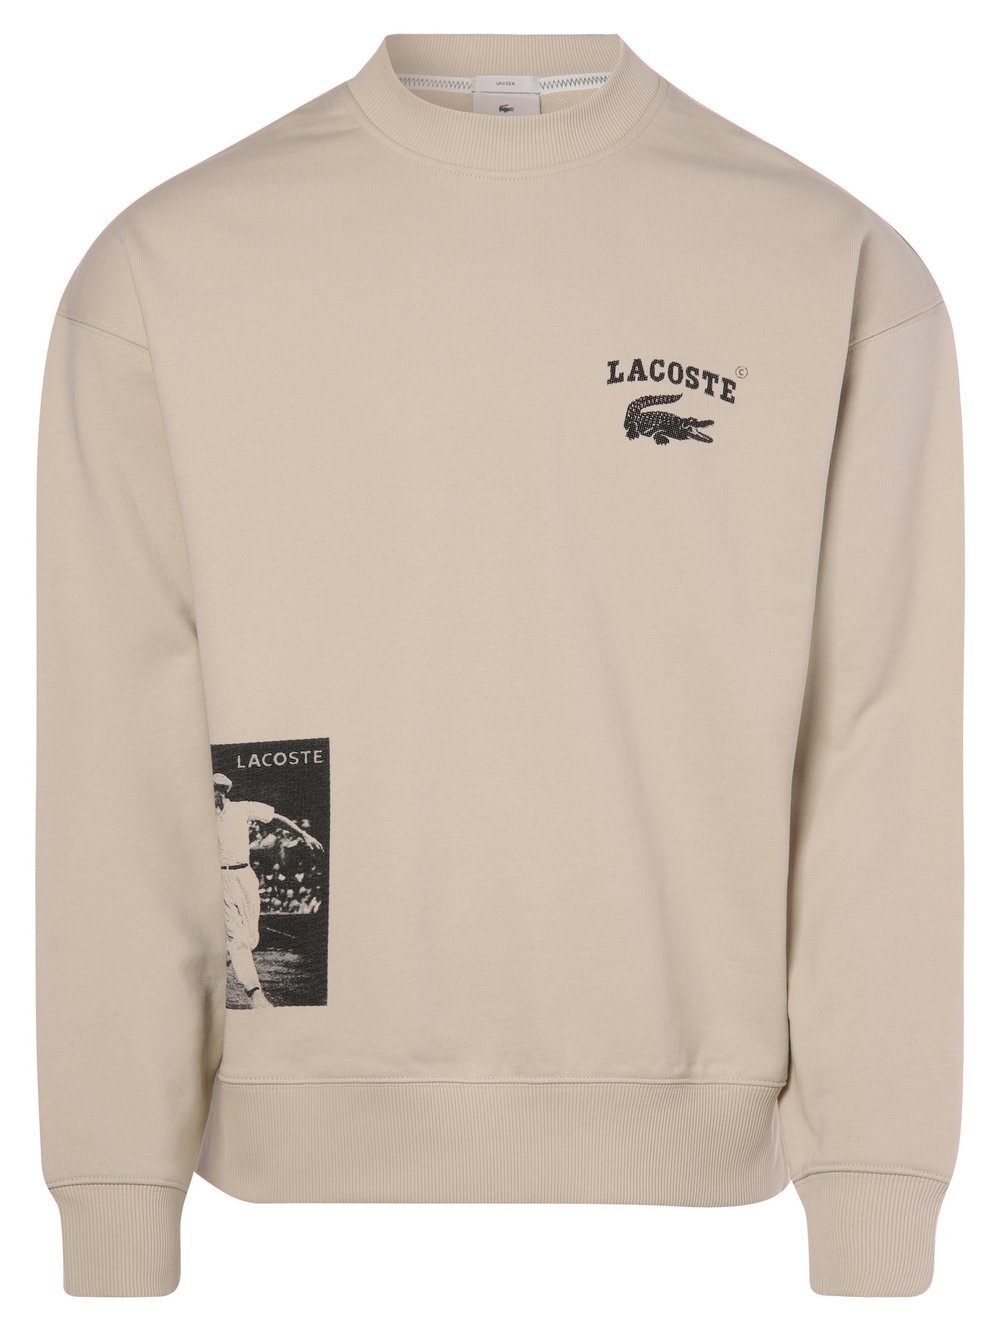 Lacoste - Bluza nierozpinana z nadrukiem z logo:, beżowy|szary